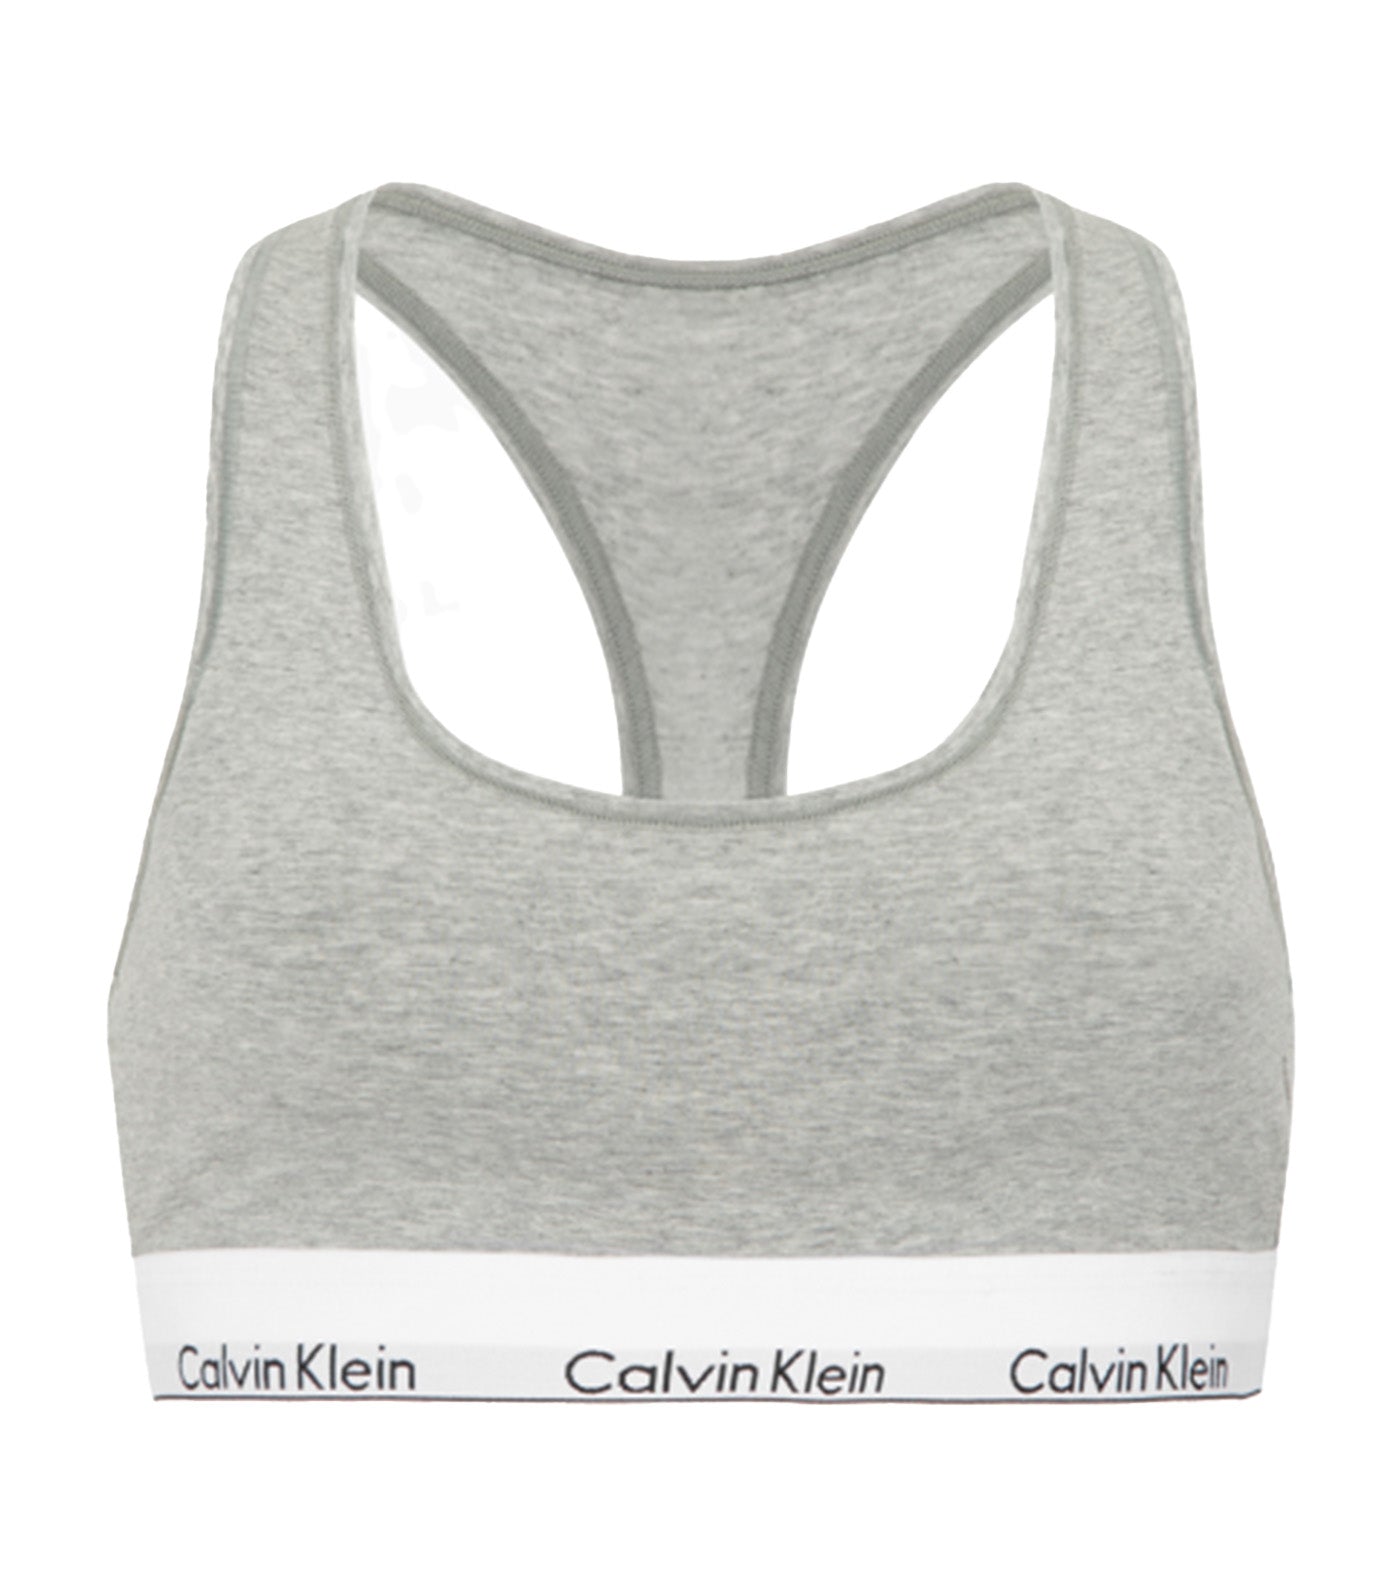 Bra Calvin Klein Modern Cotton Holiday Unlined Bralette